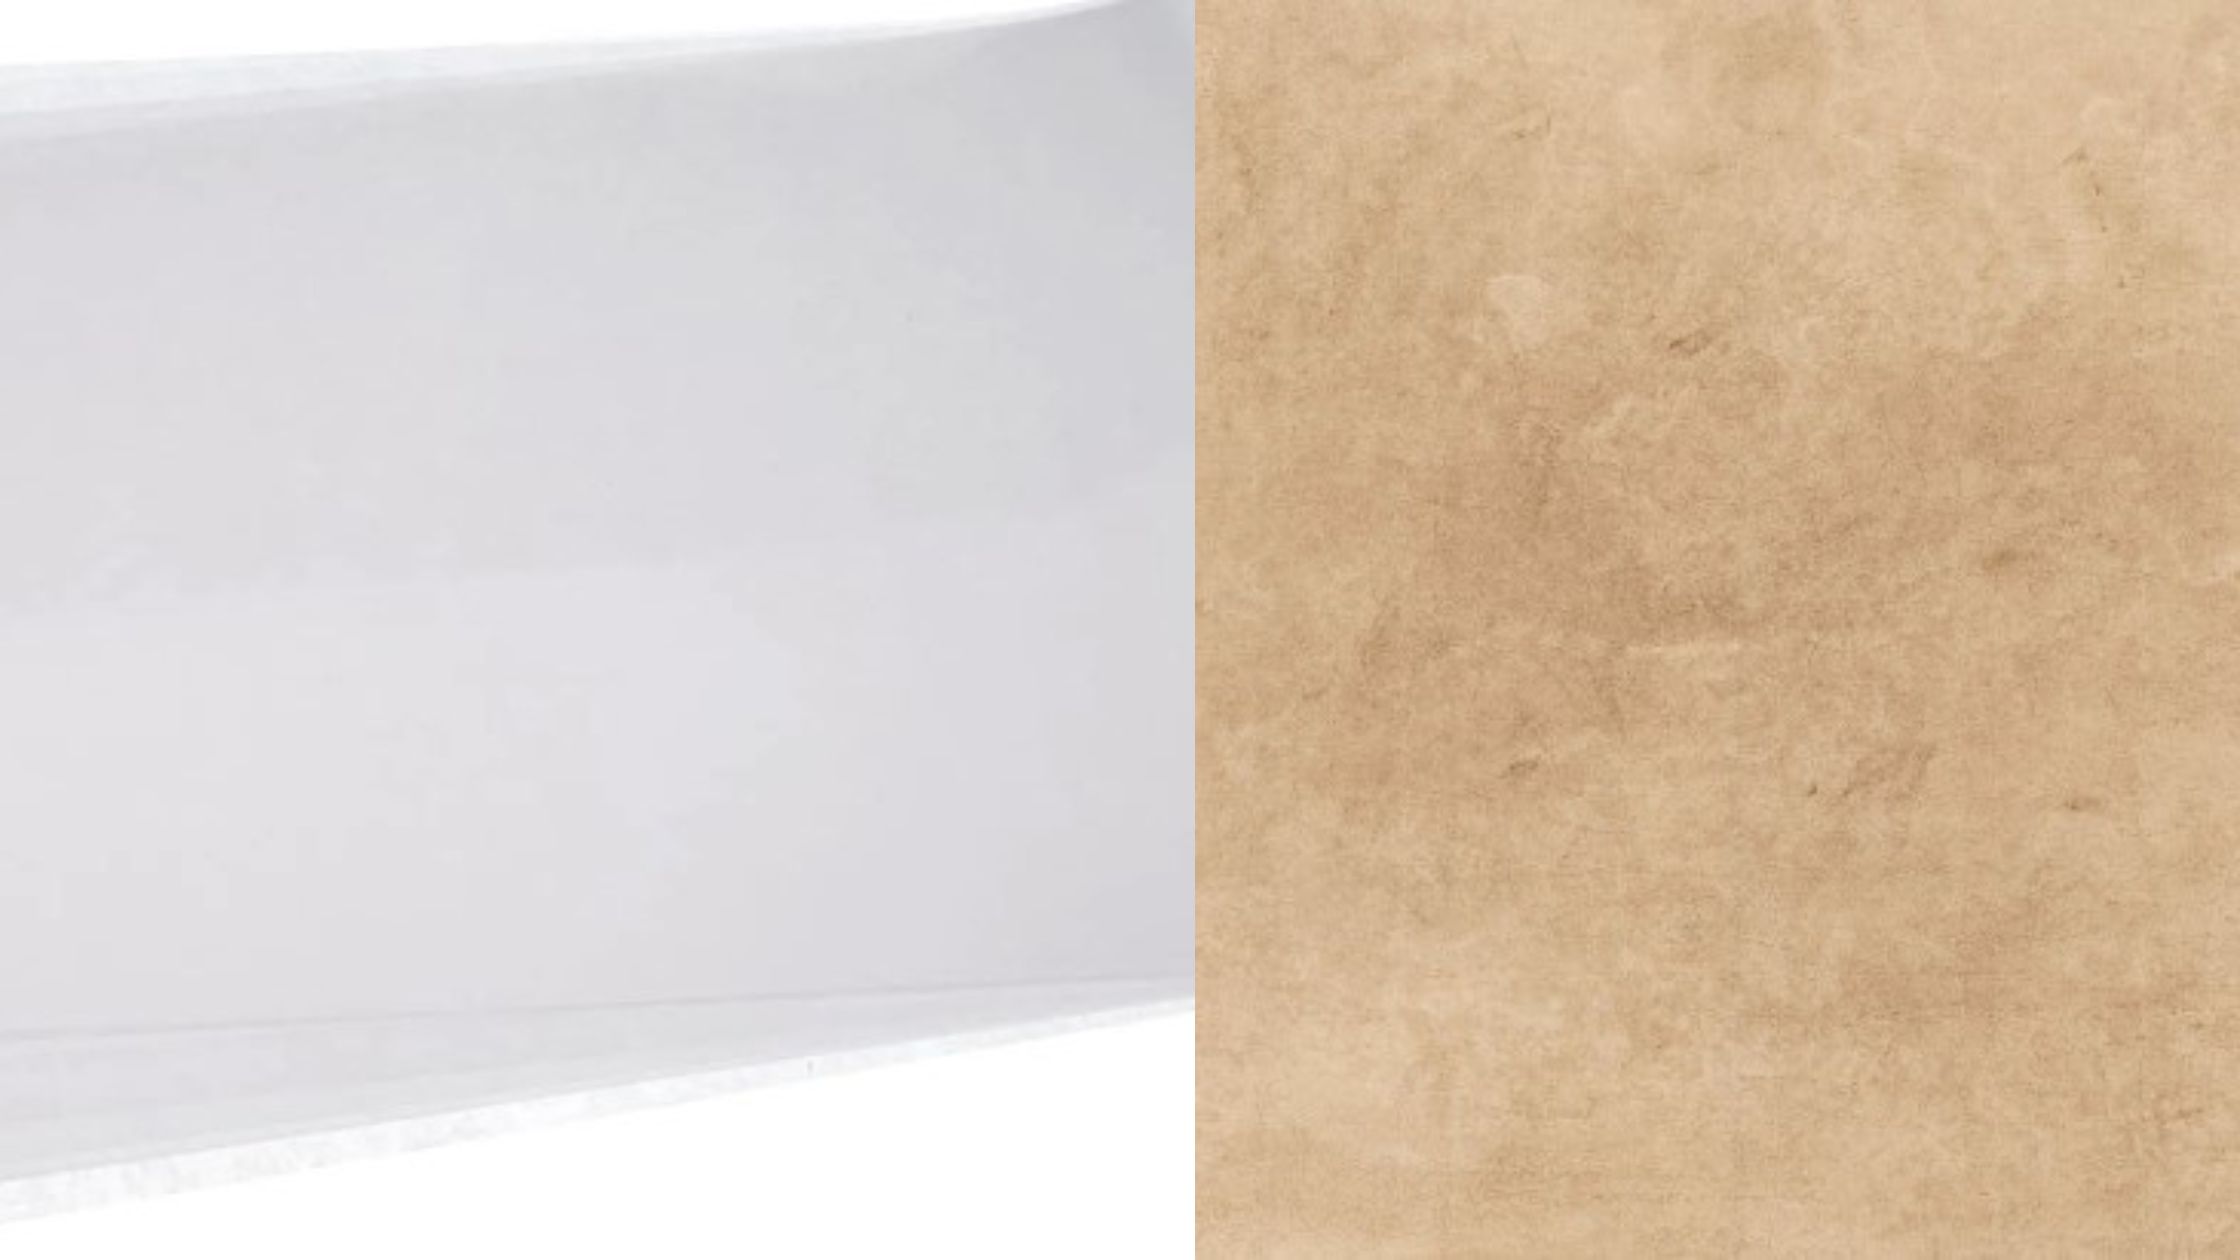 Acetate Sheets vs Parchment Paper